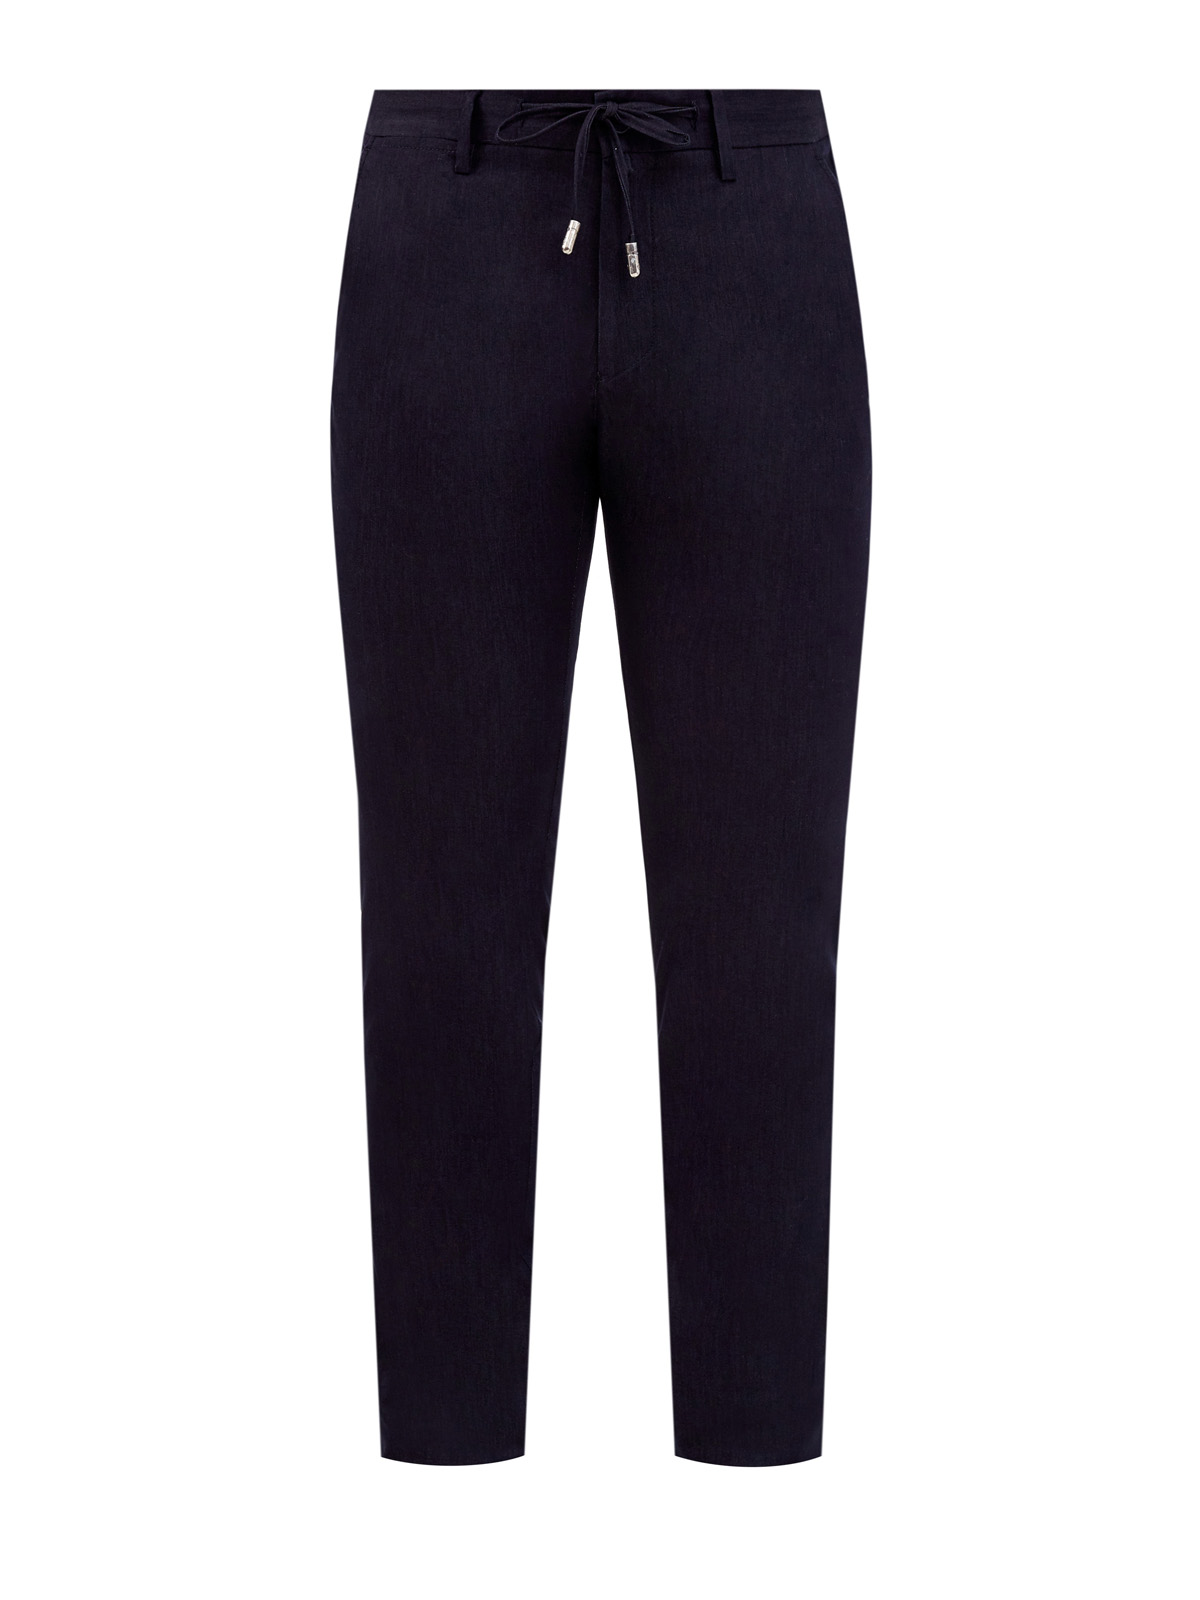 Легкие брюки в стиле casual с поясом на кулиске CUDGI, цвет черный, размер M;L;XL;2XL;4XL;5XL;S - фото 1